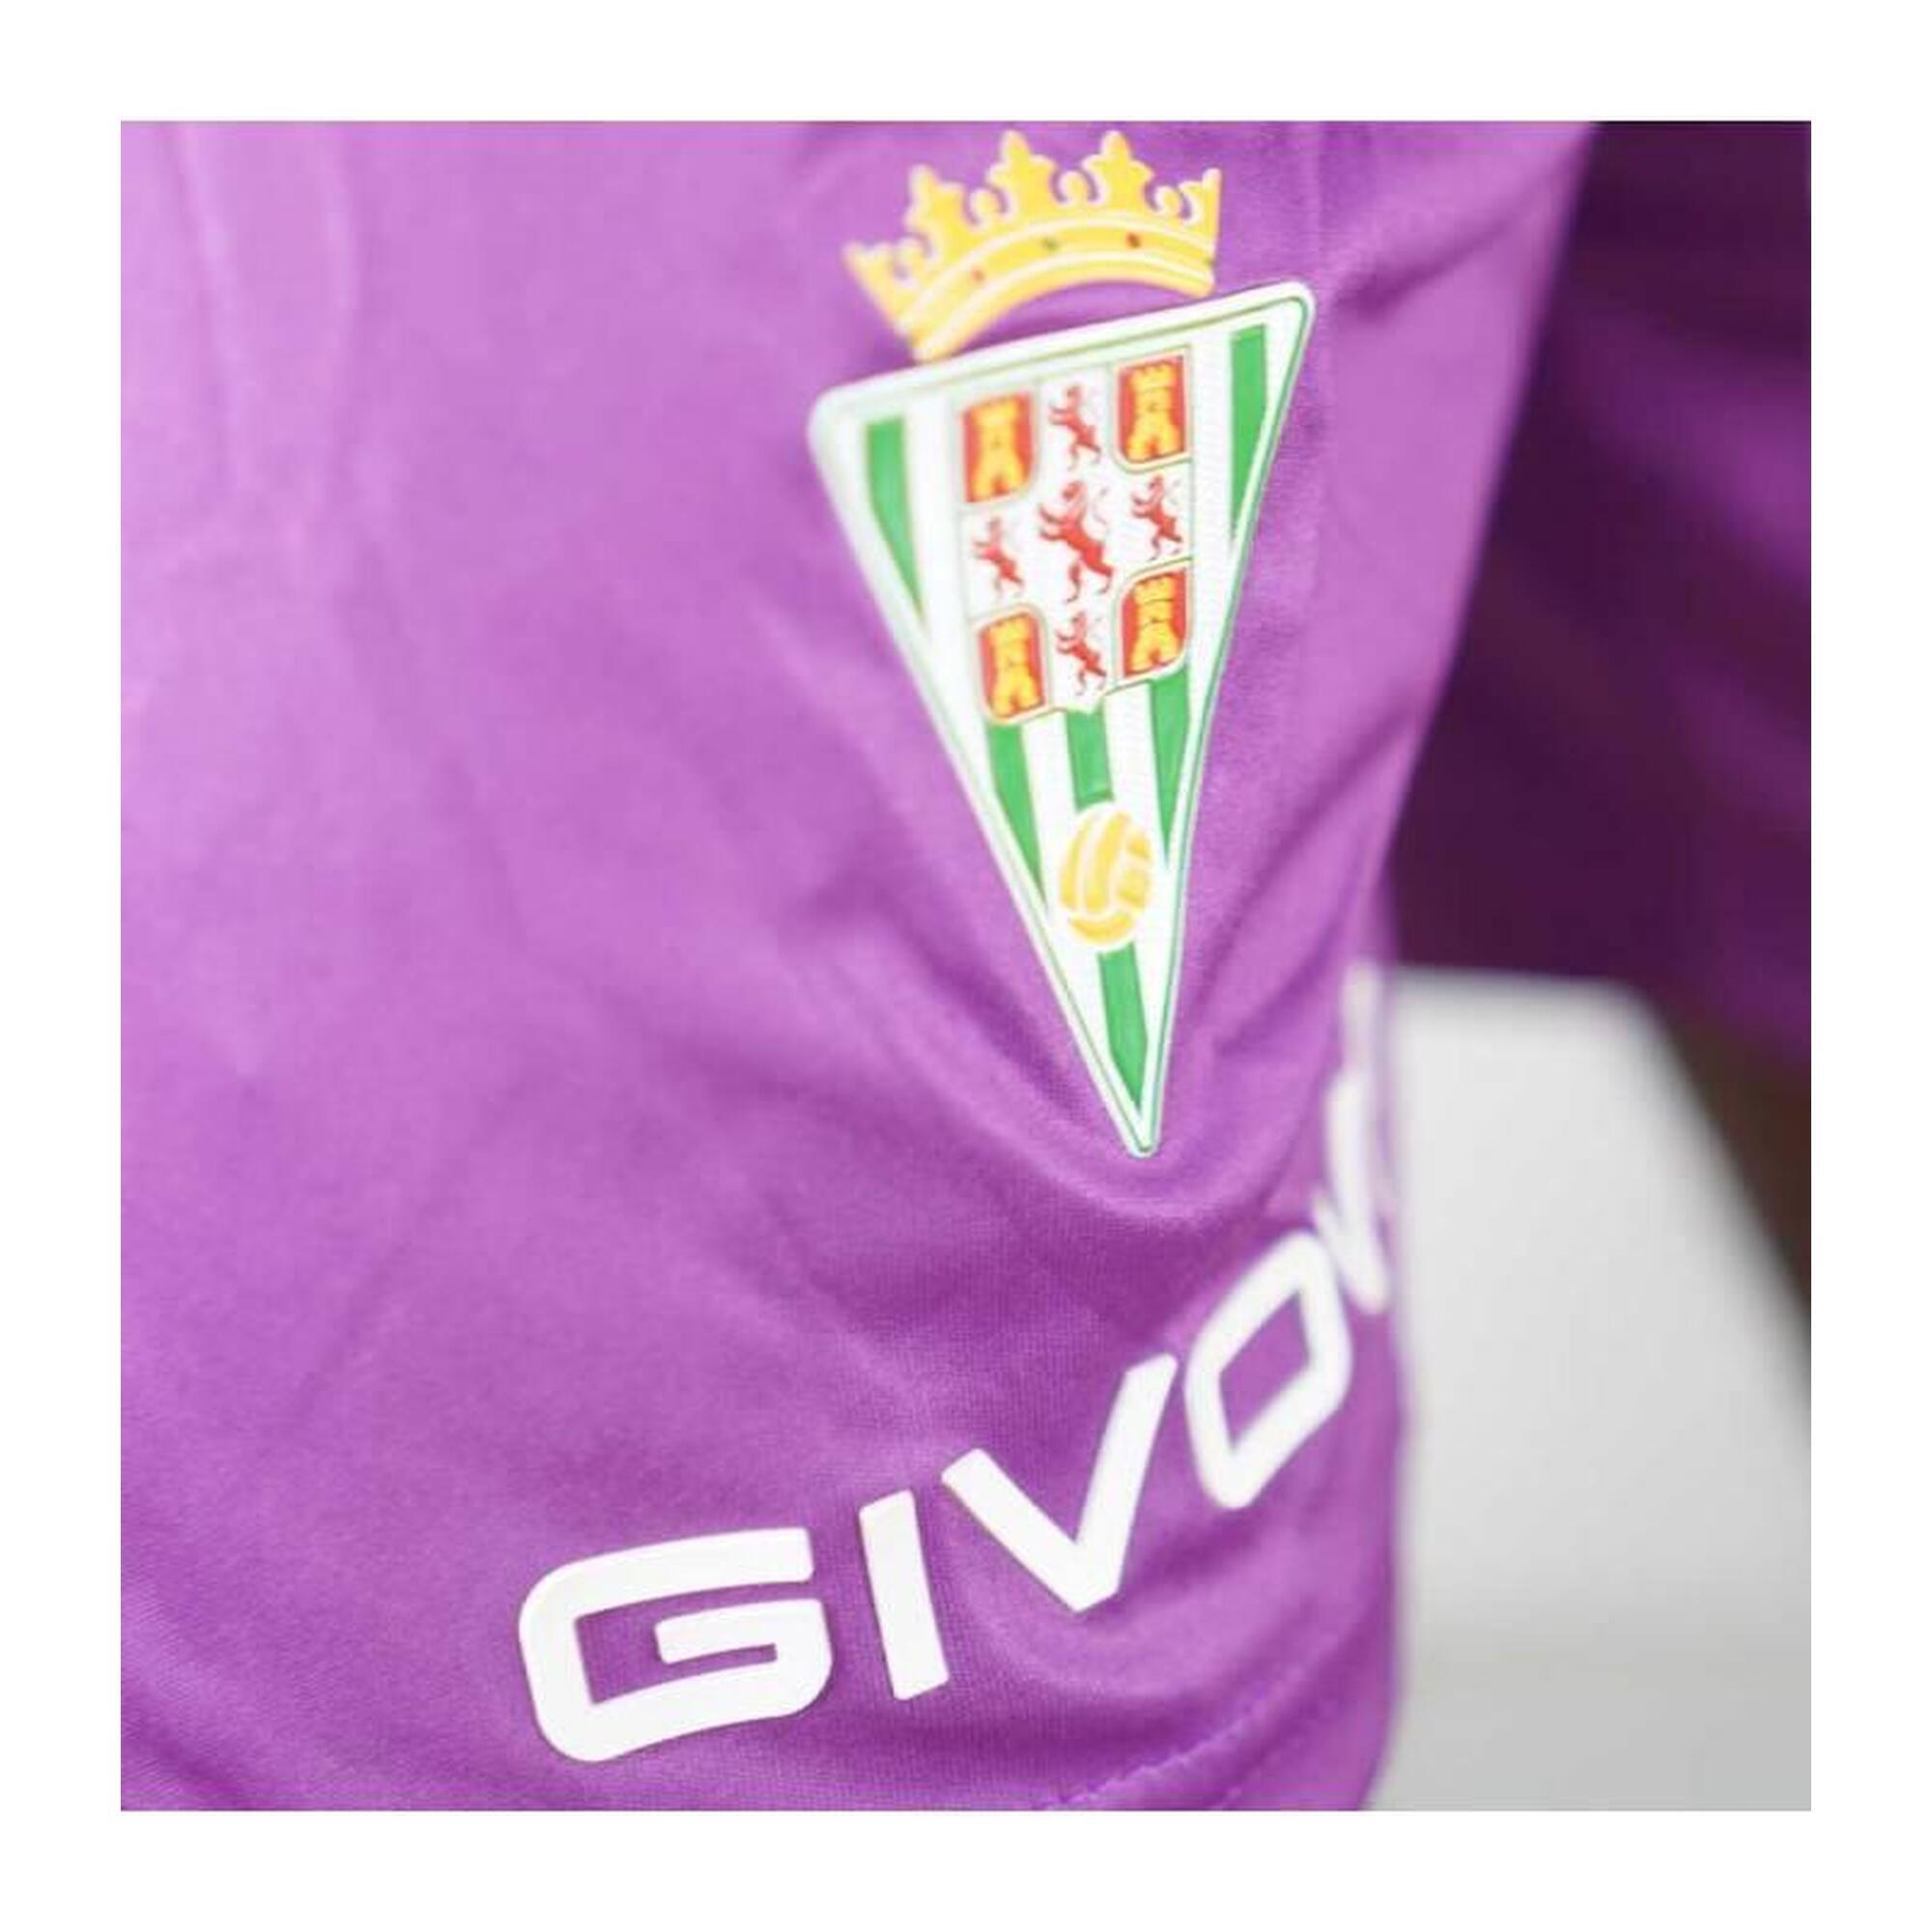 Calções roxos do Córdoba CF Givova.